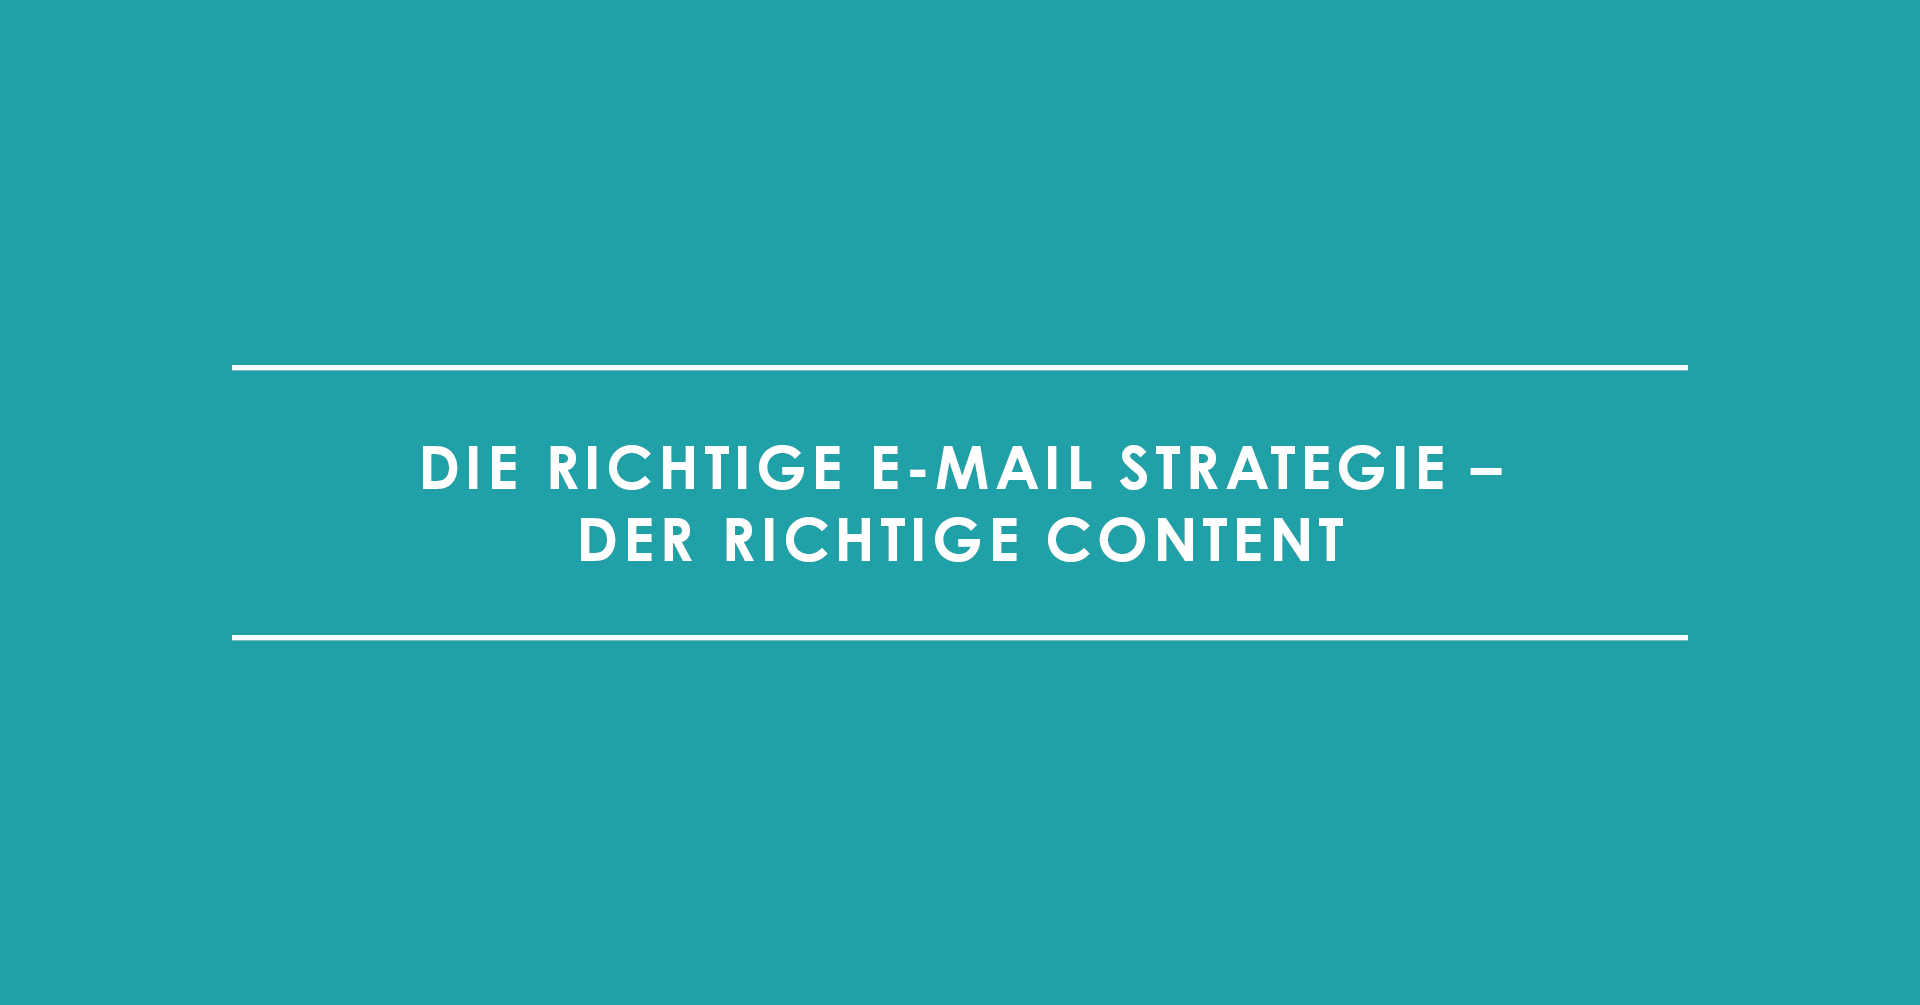 Die richtige E-Mail Strategie - der richtige Content